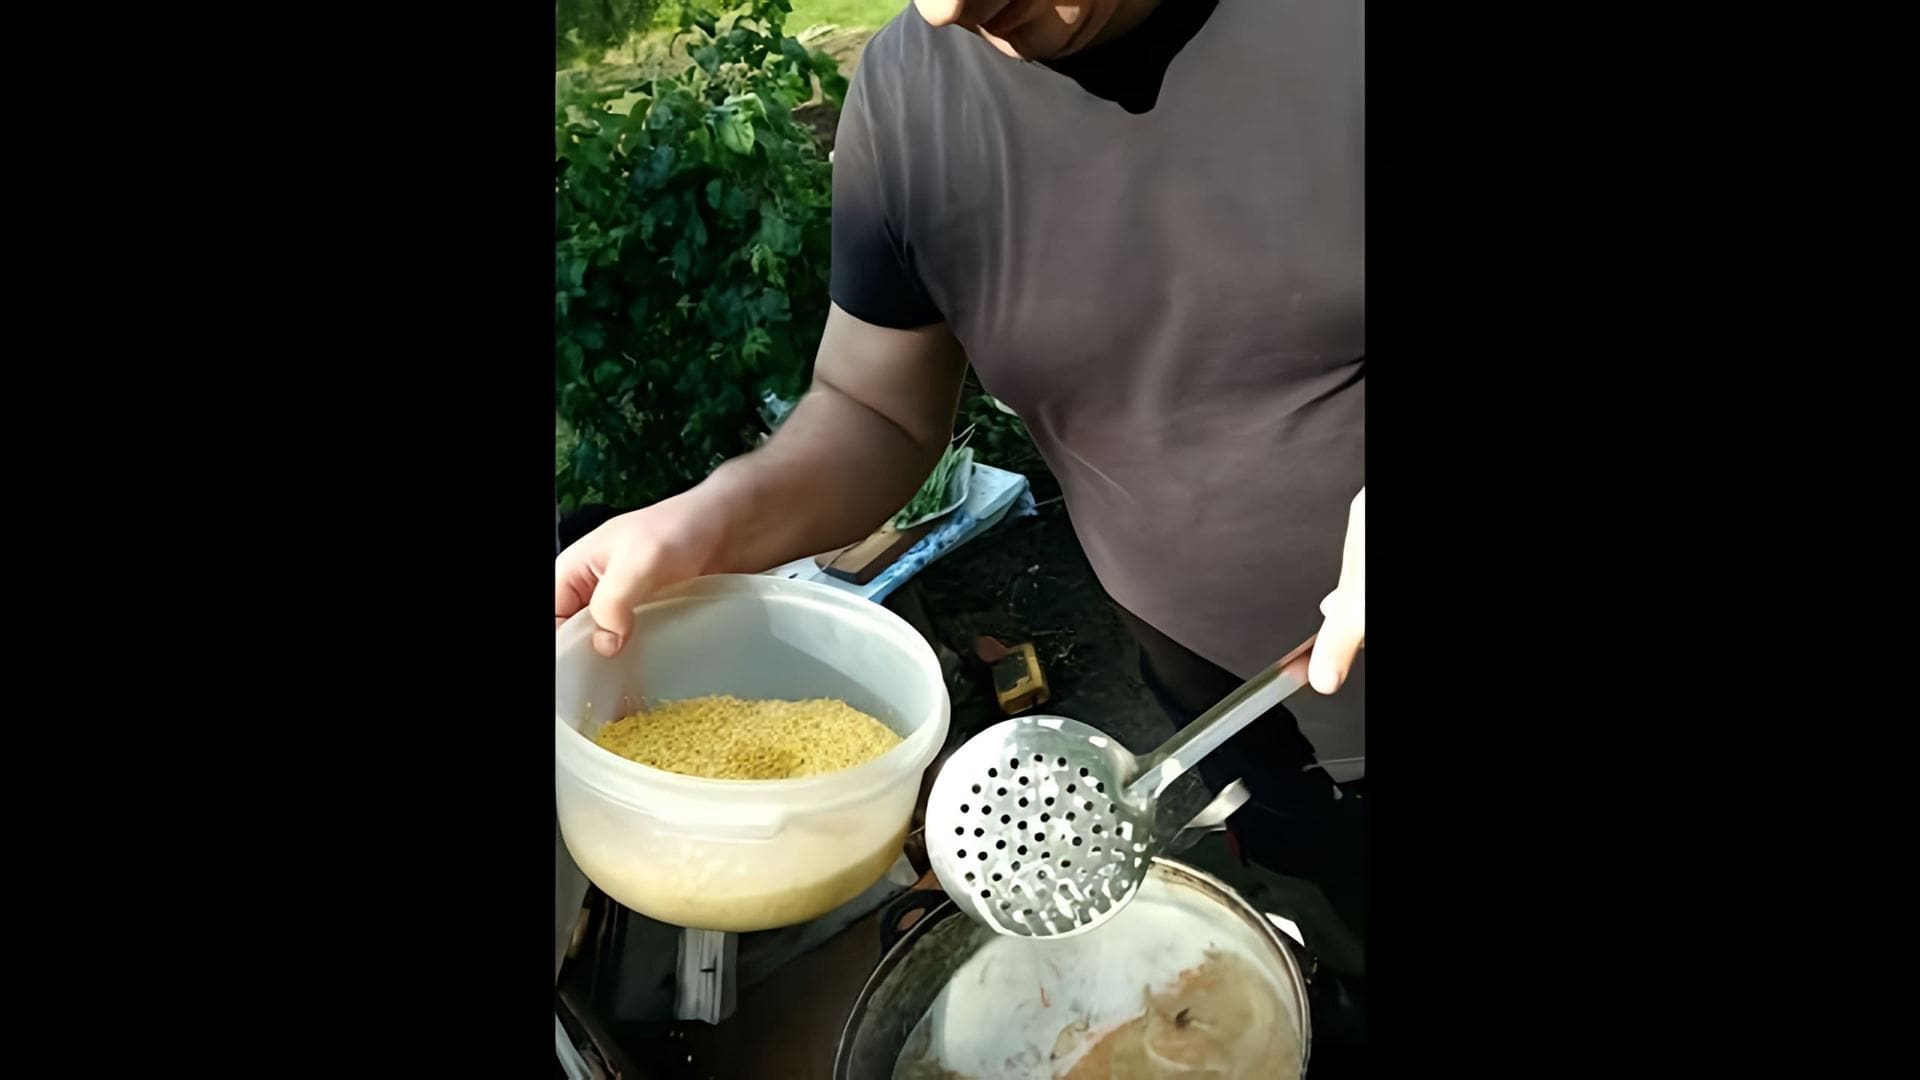 В этом видео демонстрируется процесс приготовления пшенной каши с тушенкой в казане